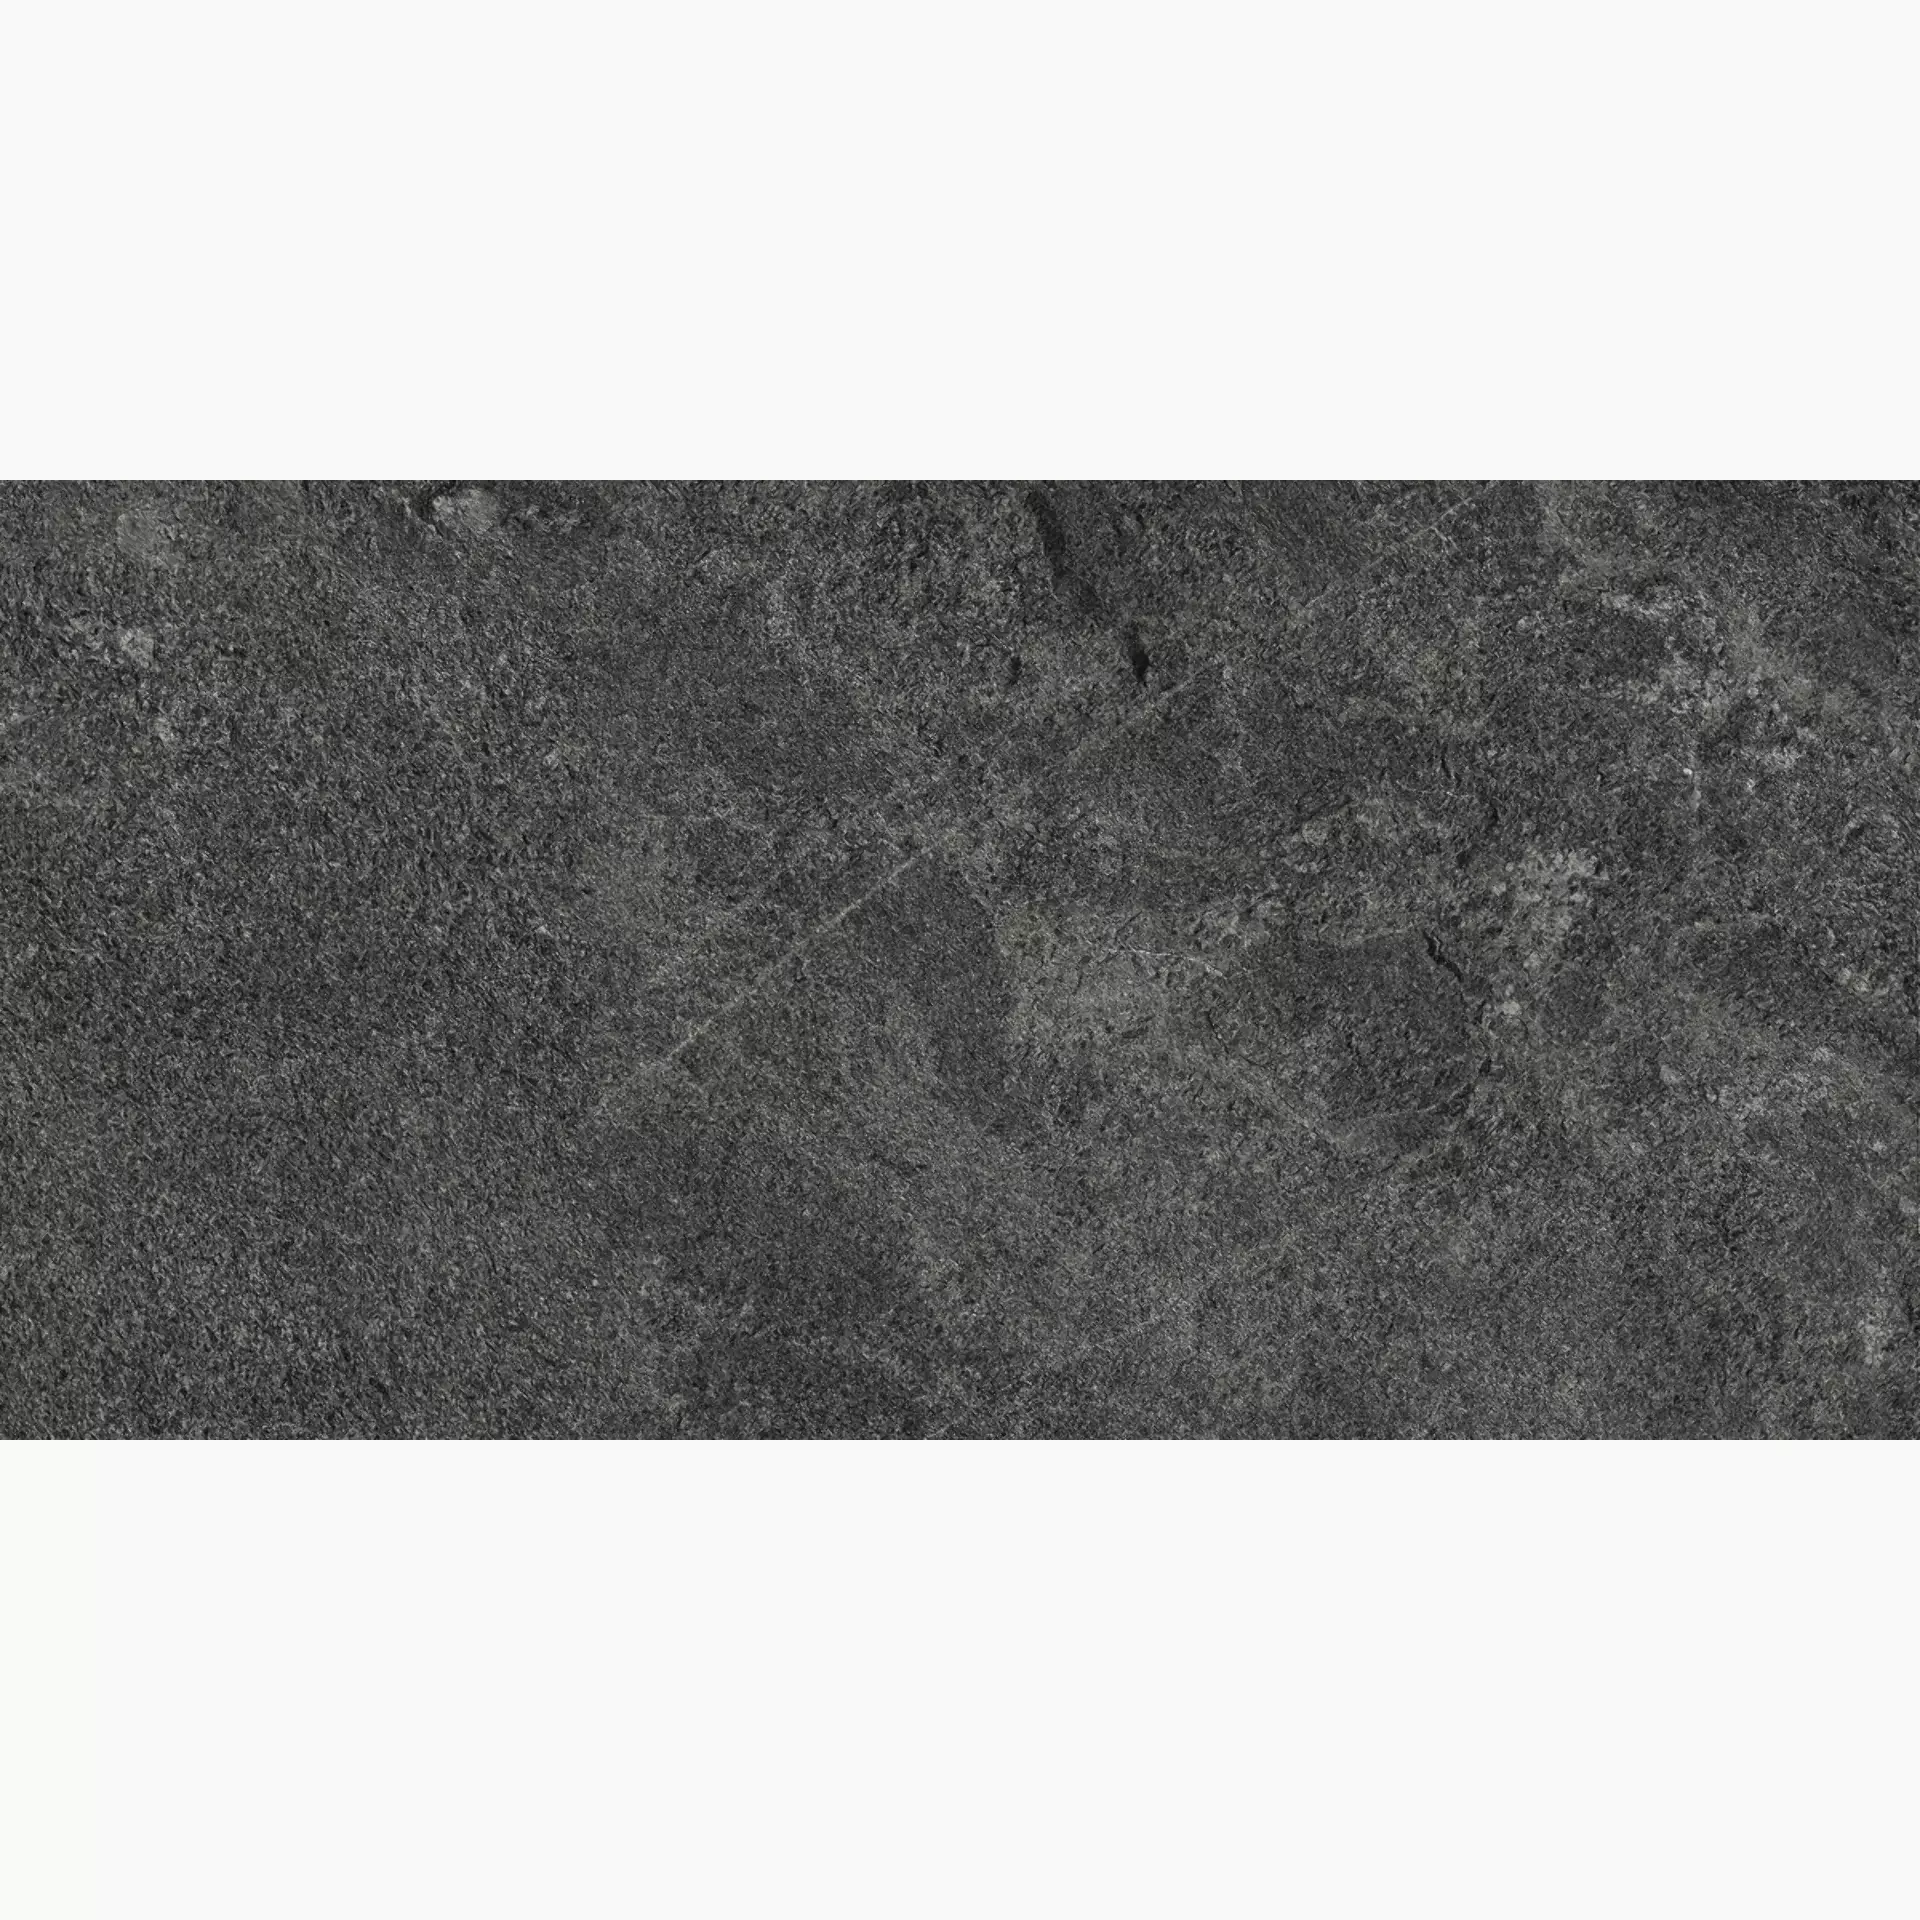 Marazzi Mystone Quarzite Black Naturale – Matt MZTS 30x60cm rectified 10mm